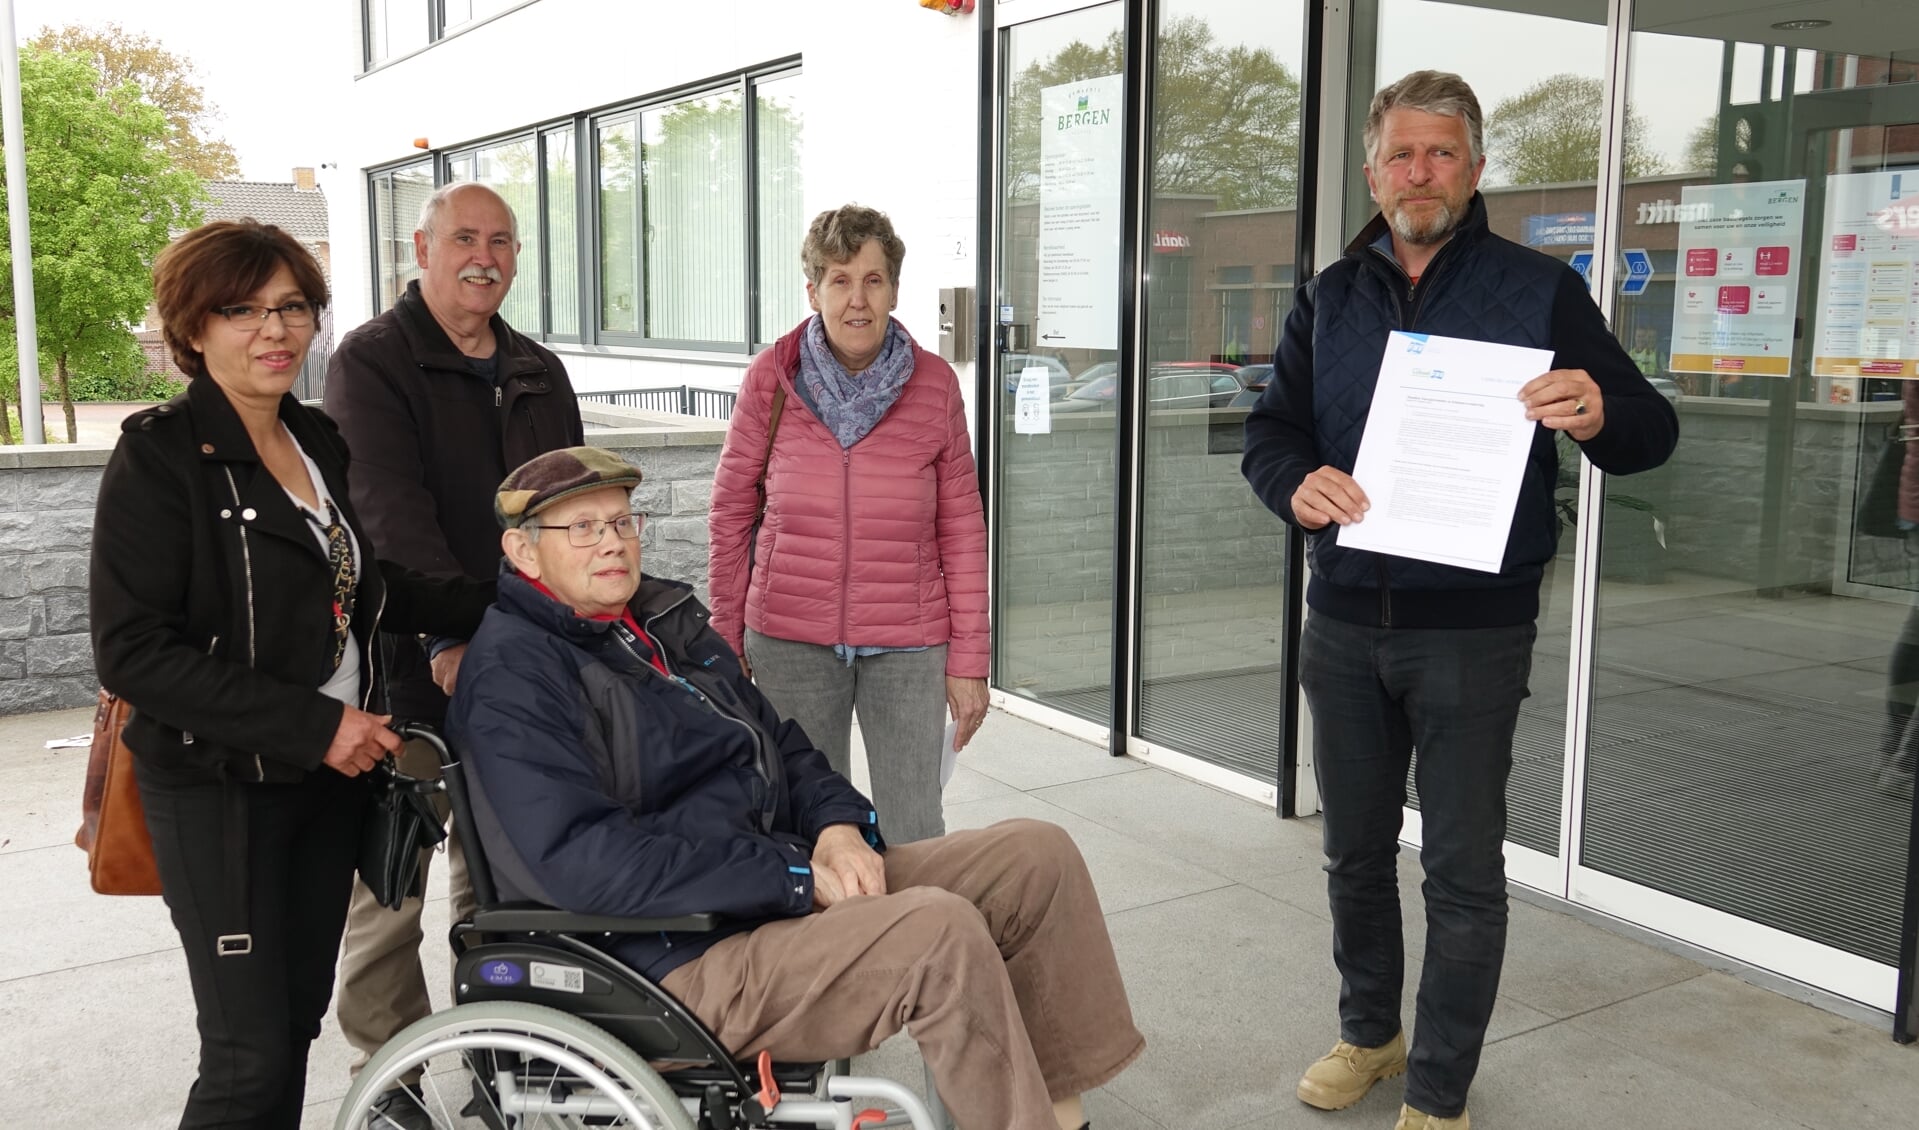 Mevrouw Akram, Hans Aben, Thei Welbers en Agnes Stiphout overhandigen het manifest aan wethouder Splinter